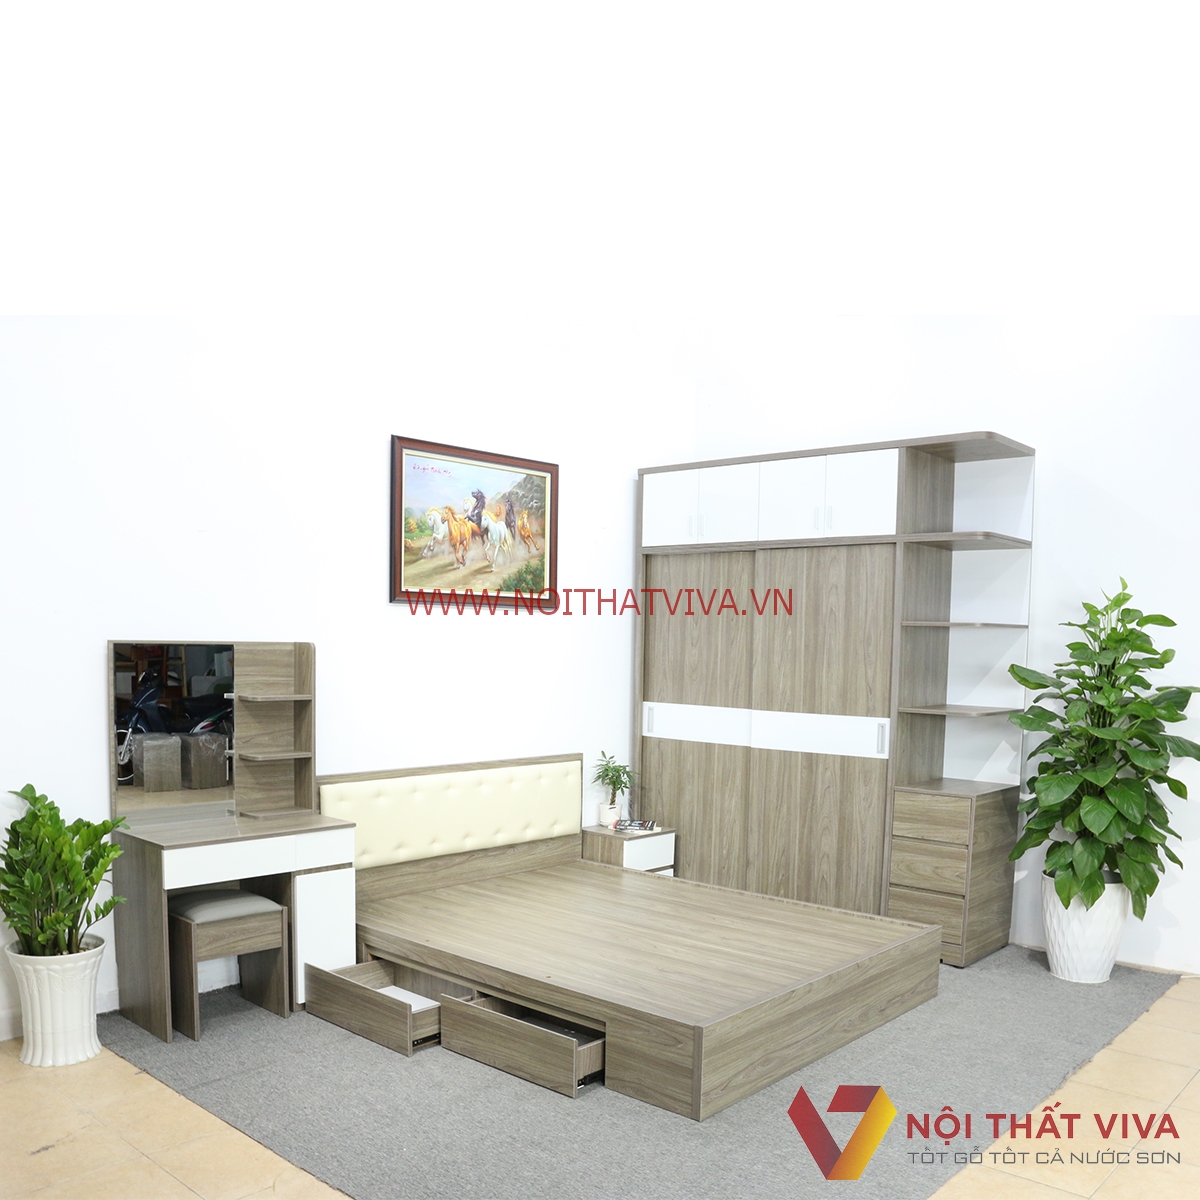 Tủ kích trần gỗ MDF: Thiết kế nội thất hiện đại với đầy đủ tiện ích cũng như tính thẩm mỹ cao là điểm nhấn của năm